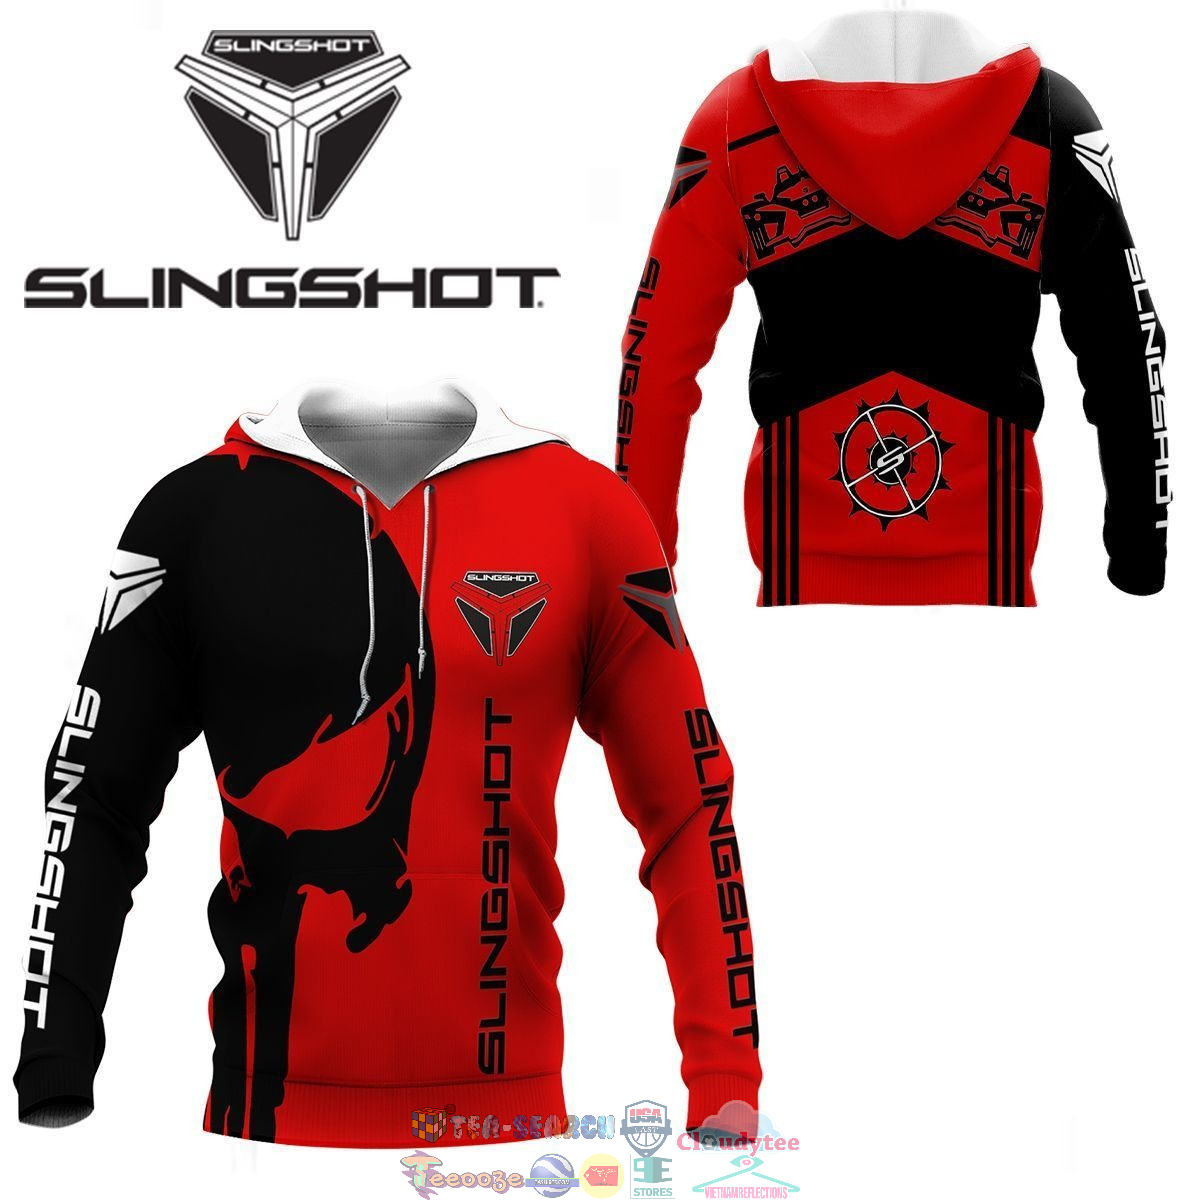 Slingshot Skull ver 1 3D hoodie and t-shirt – Saleoff